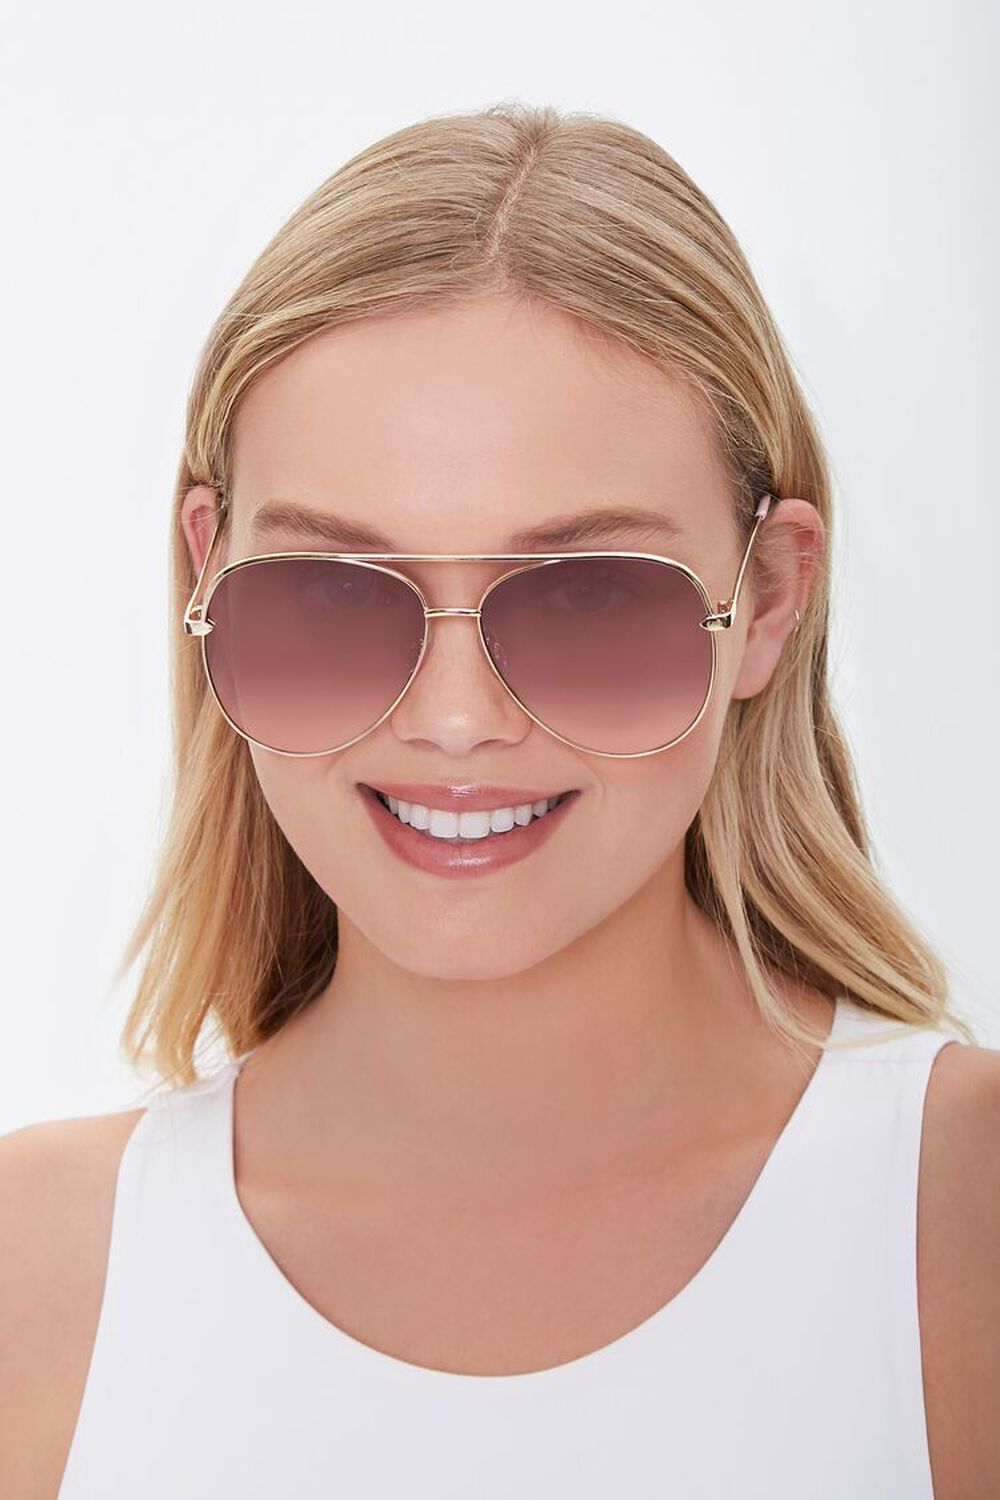 GOLD/PLUM Premium Aviator Sunglasses, image 2